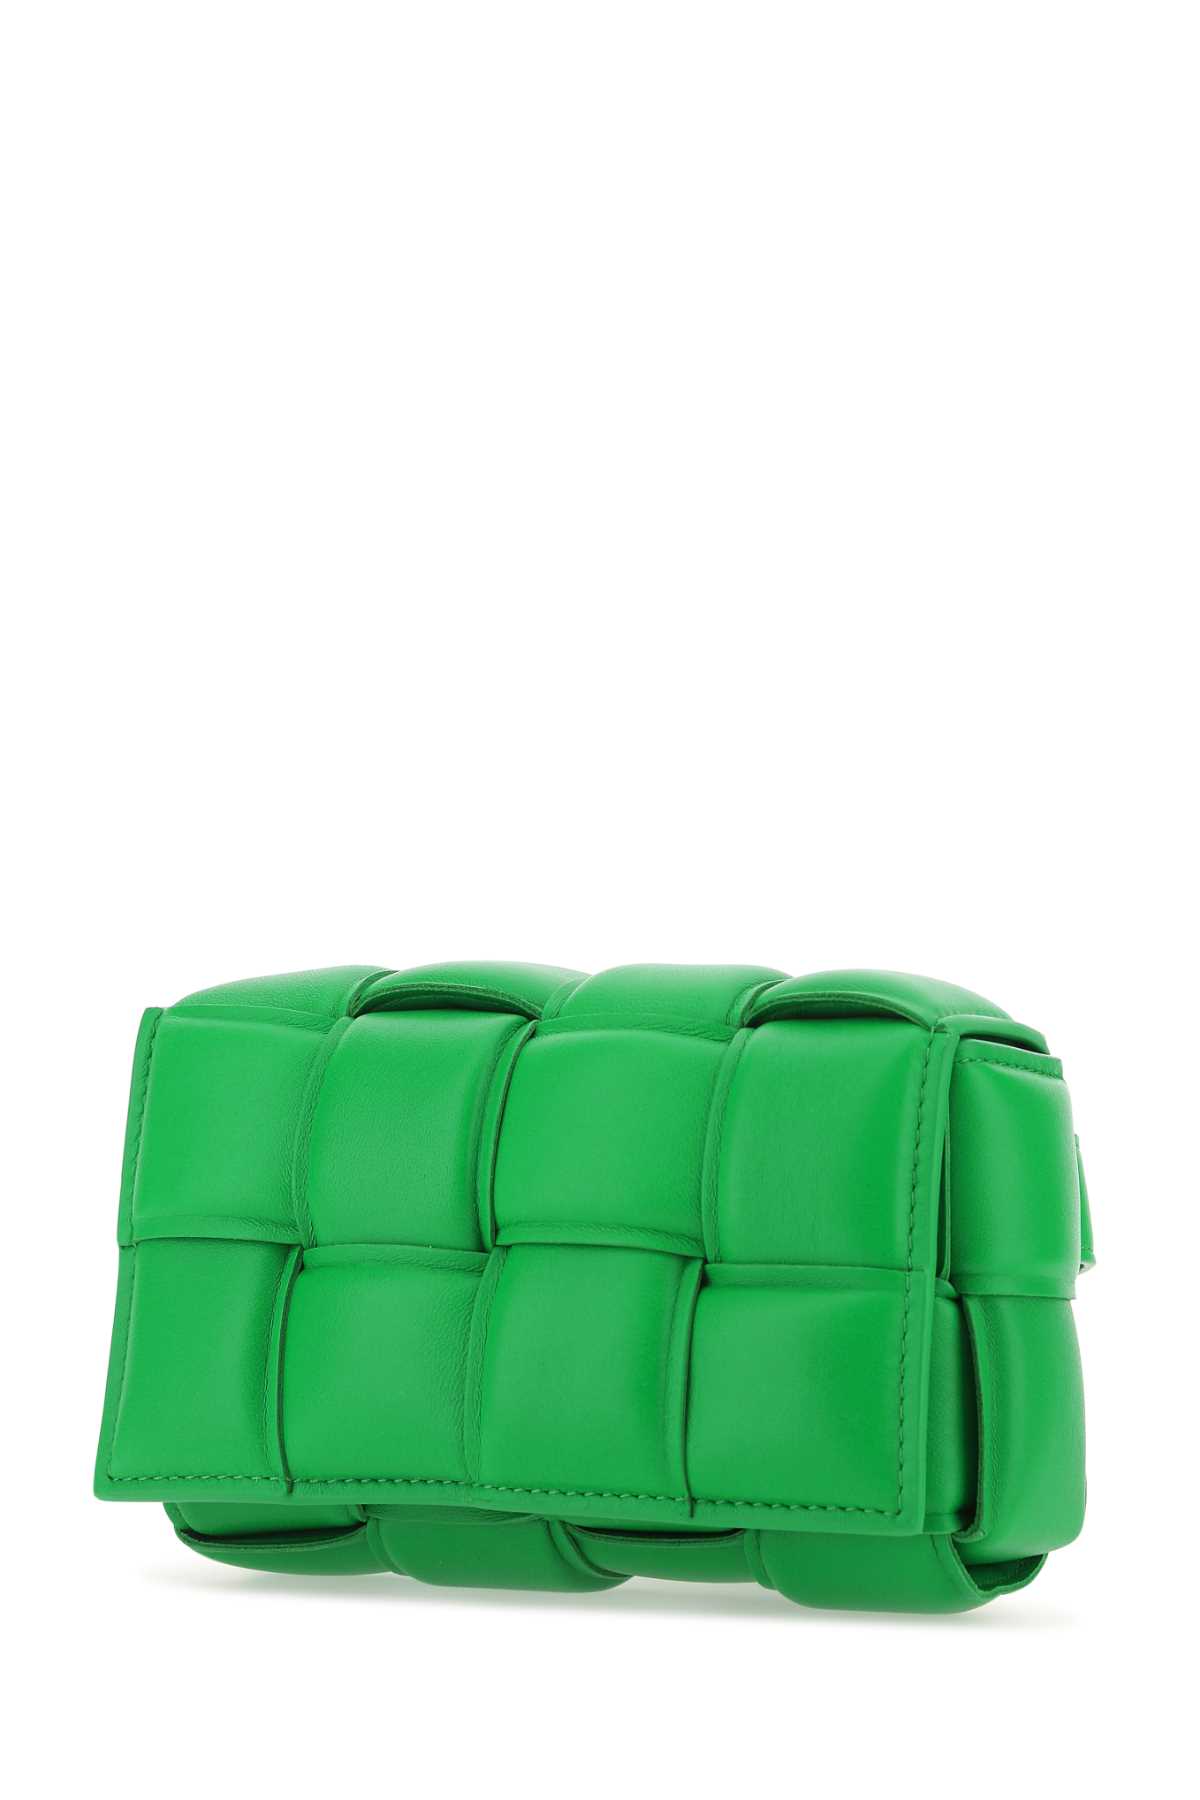 Bottega Veneta Grass Green Nappa Leather Padded Cassette Belt Bag In 3724